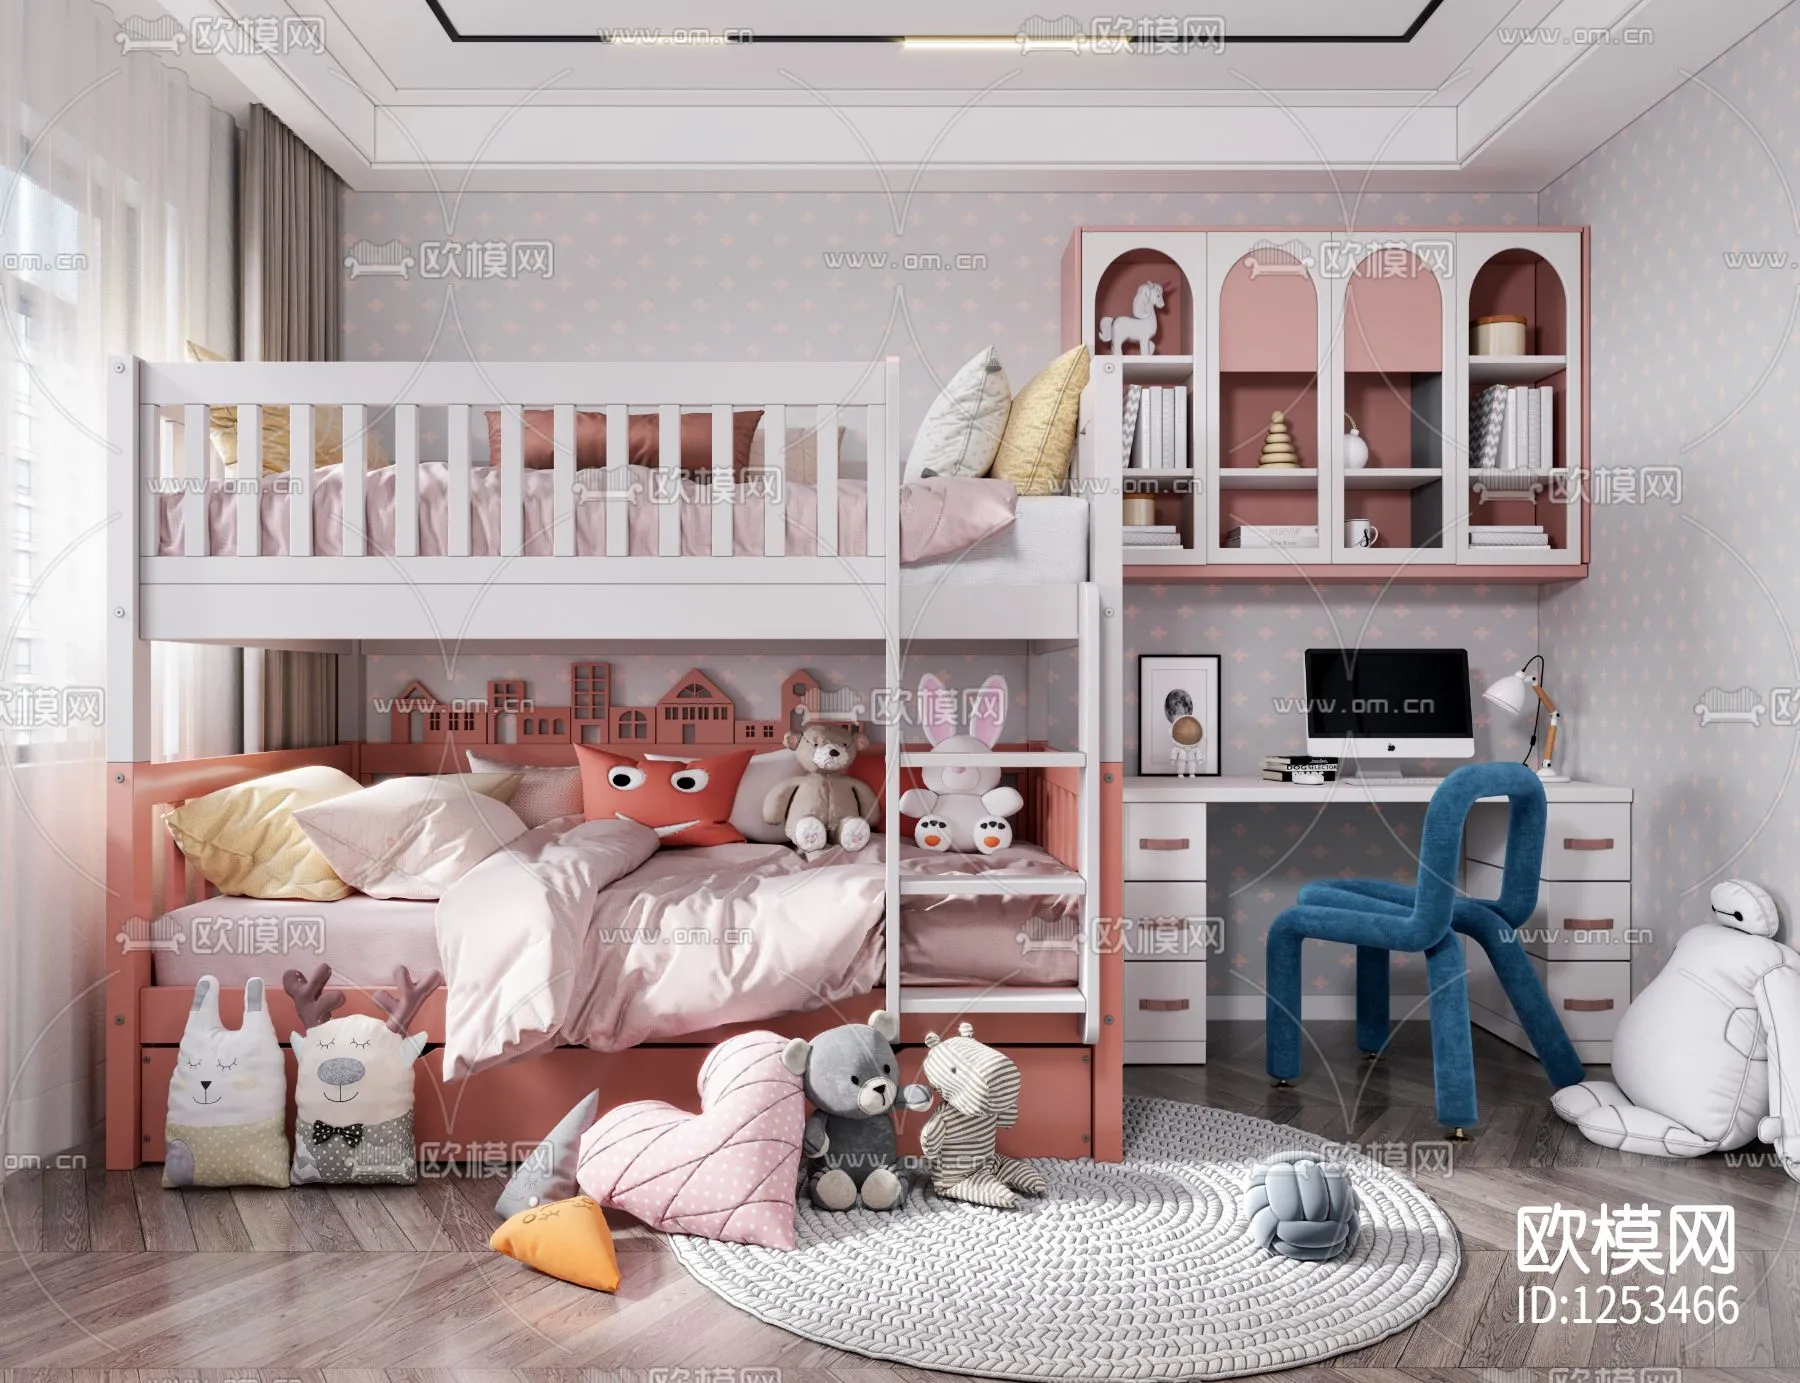 Children Room 3D Scenes – 0335